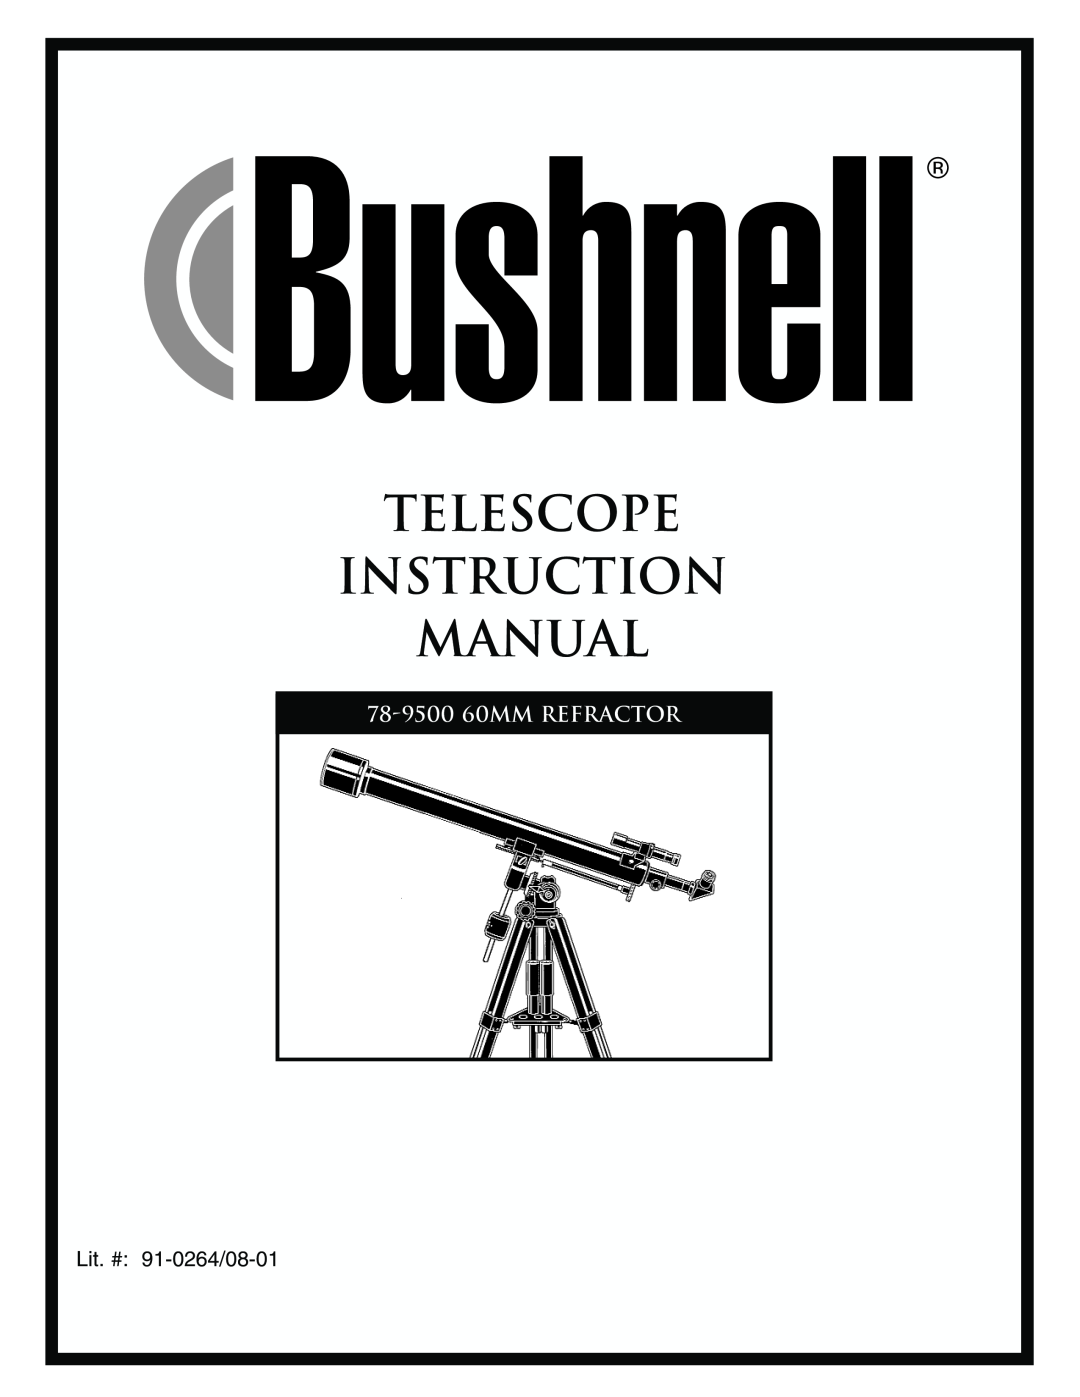 Bushnell instruction manual 78-950060MM REFRACTOR, Lit. # 91-0264/08-01 